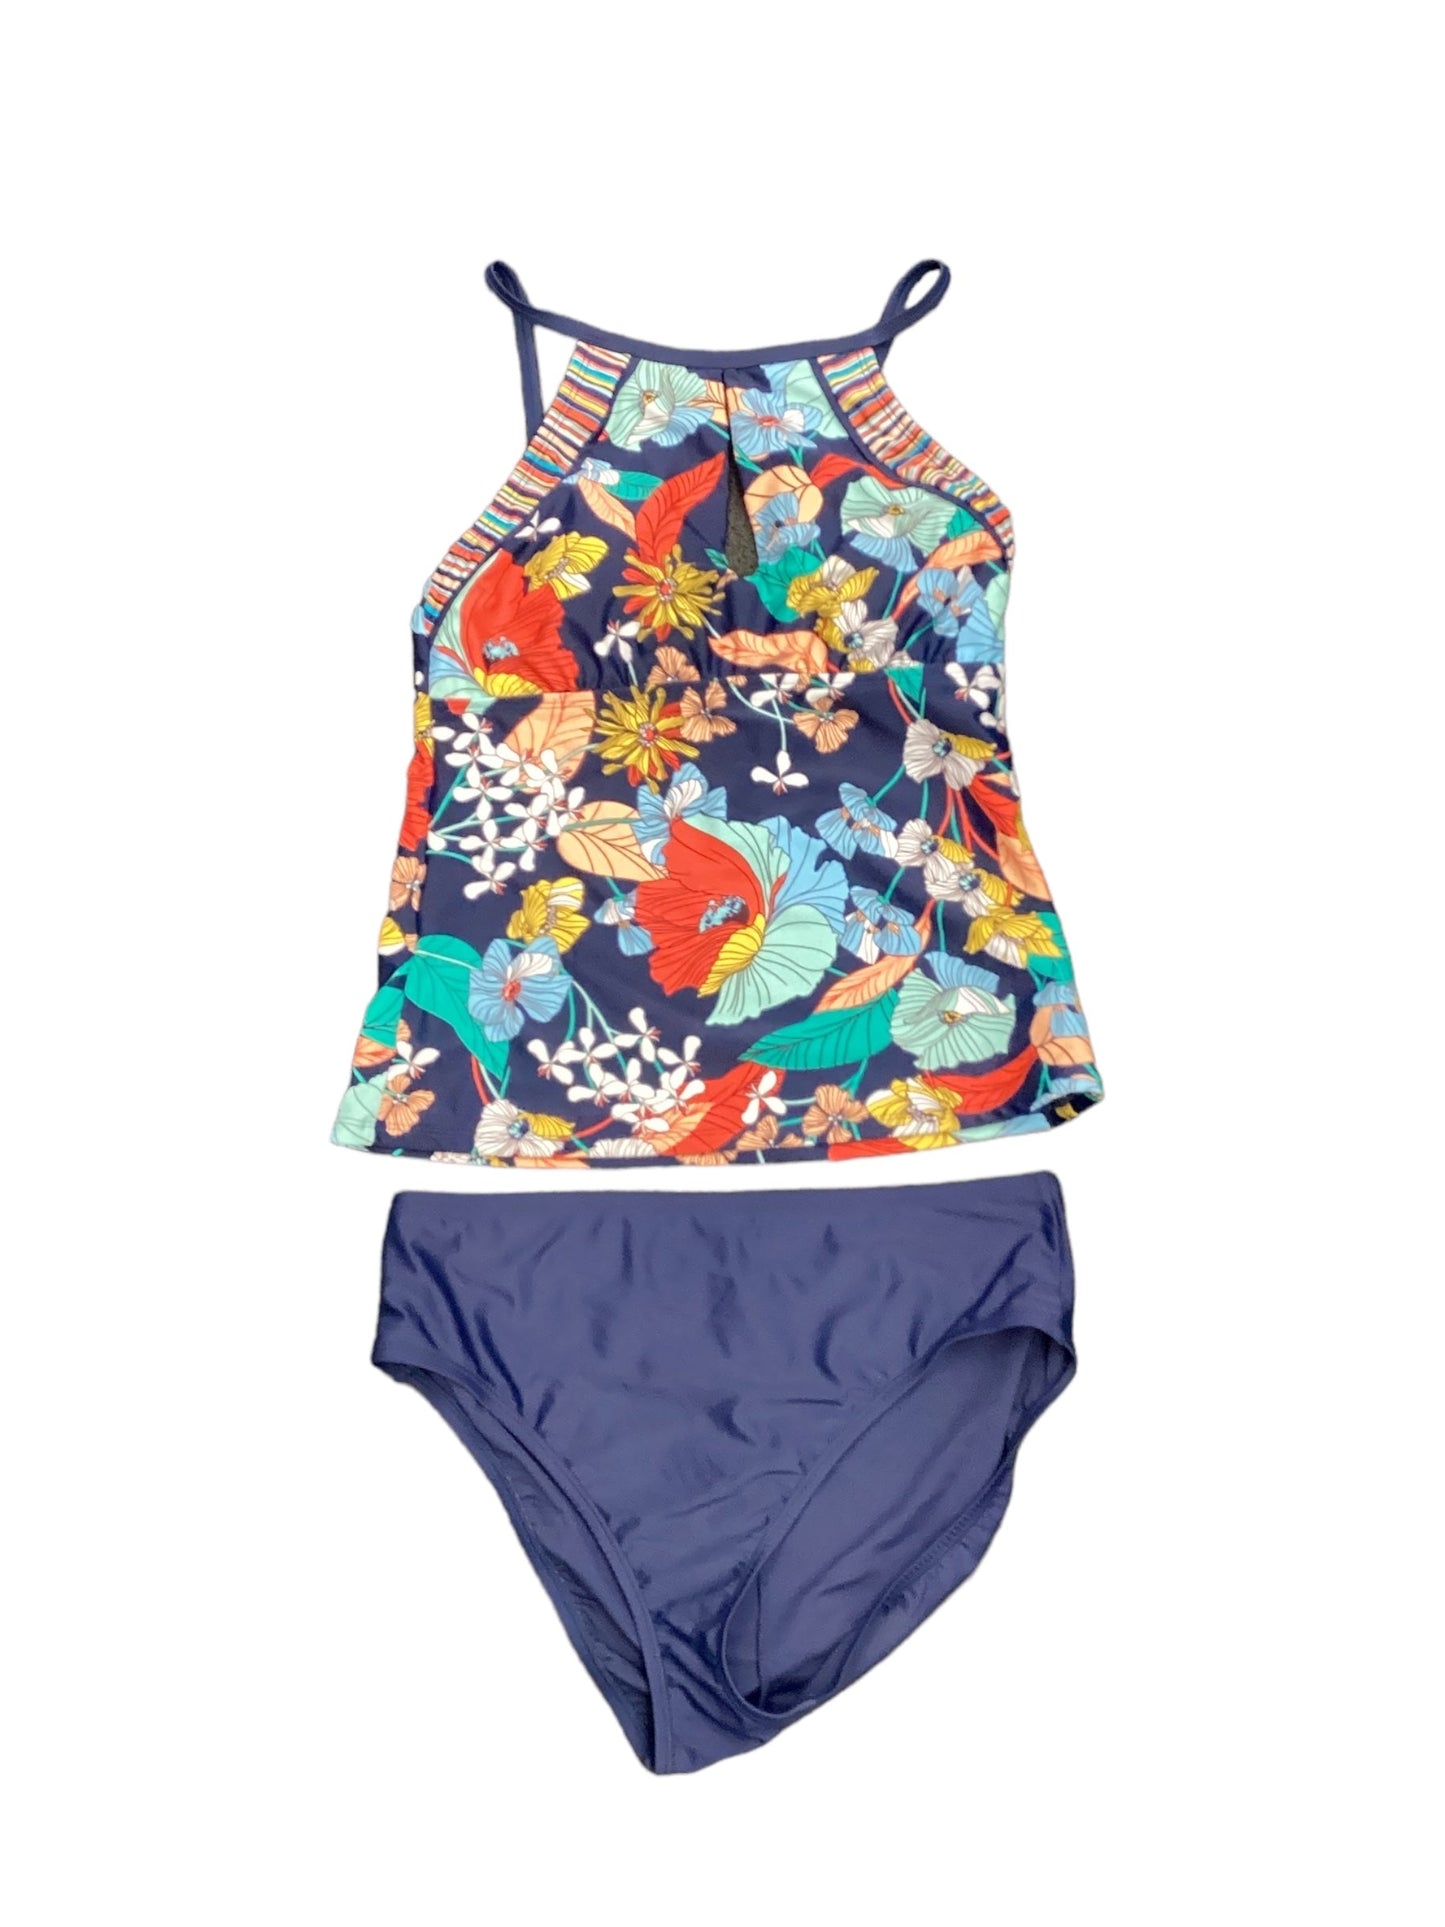 Floral Print Swimsuit 2pc Clothes Mentor, Size L